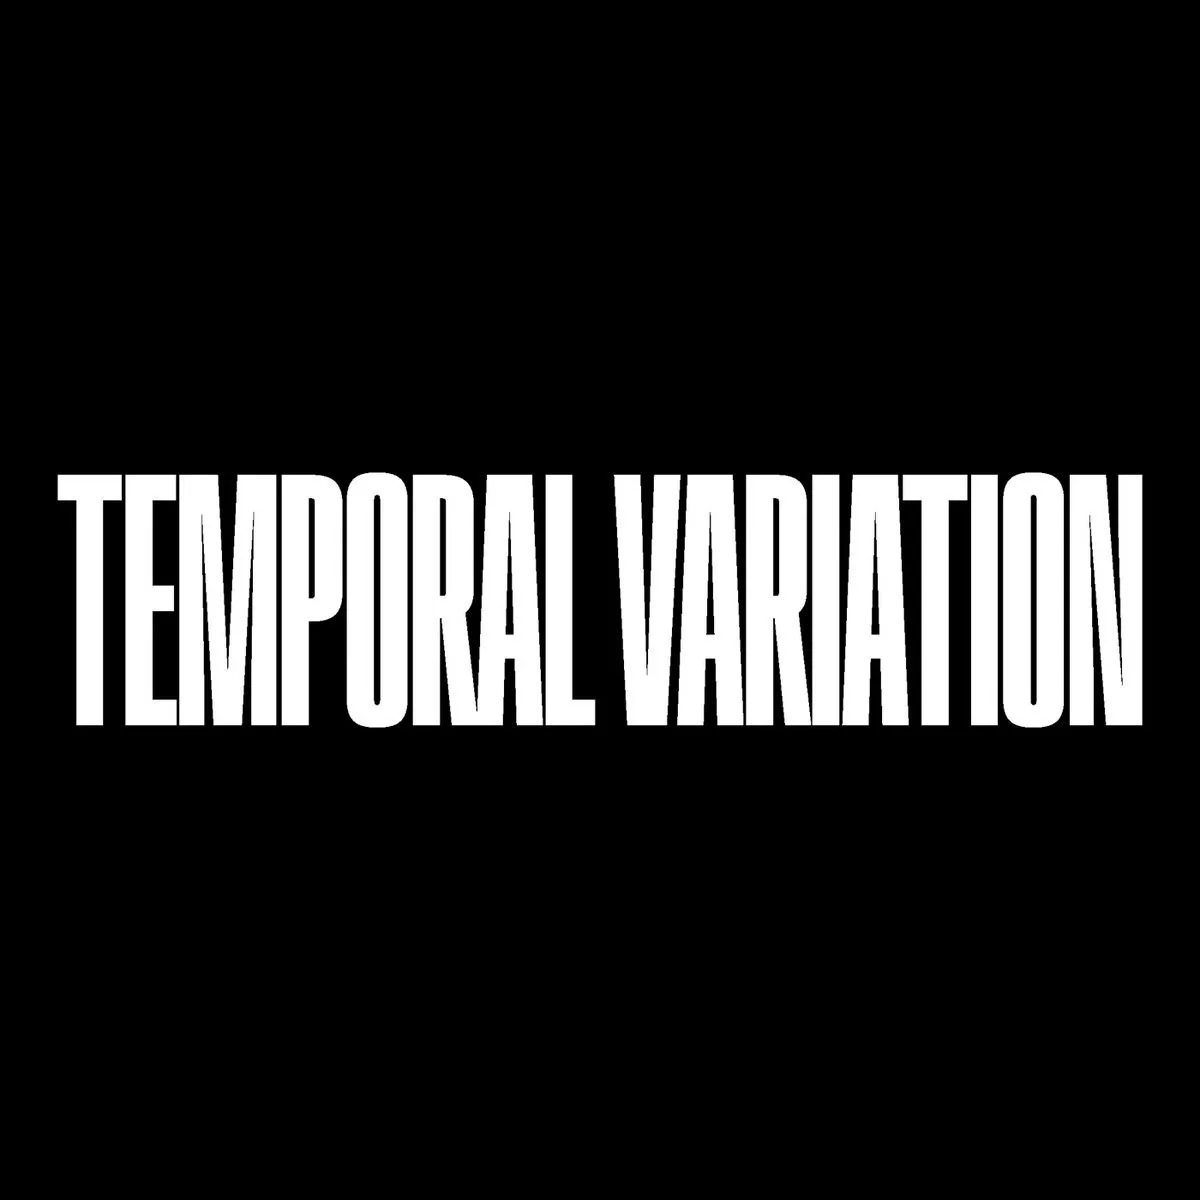 Temporal Variation